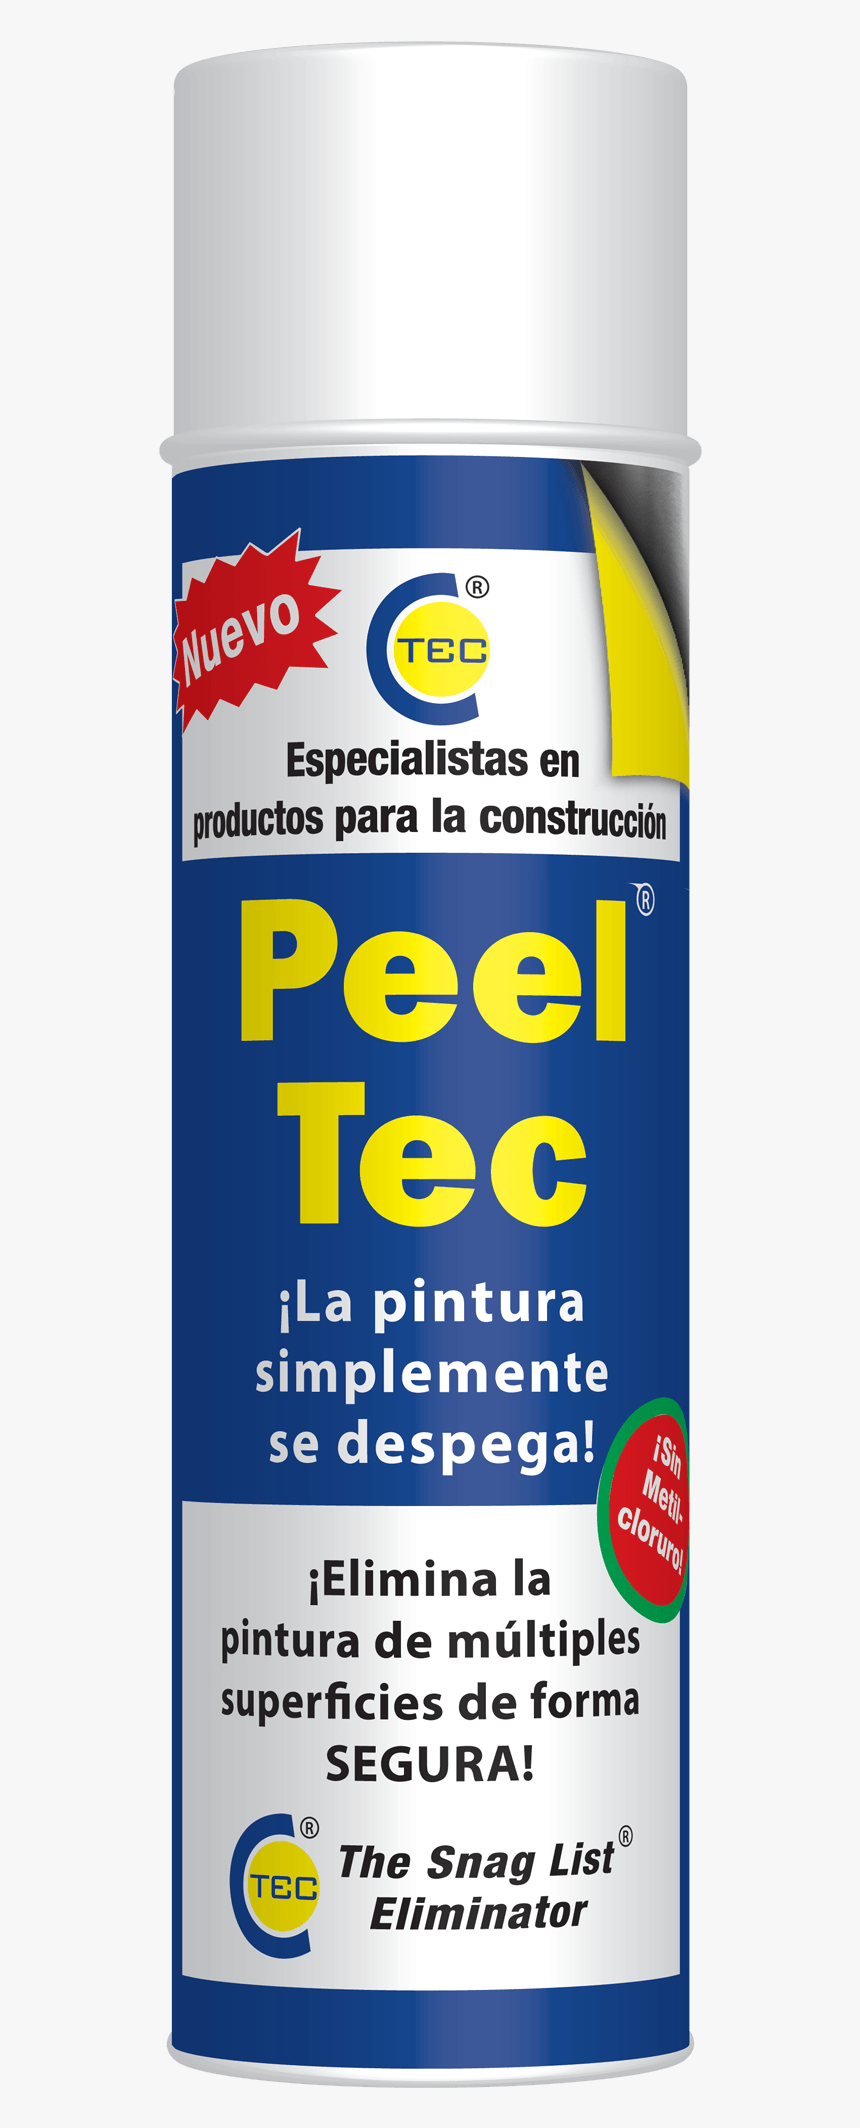 Peel Tec Ct1, HD Png Download, Free Download